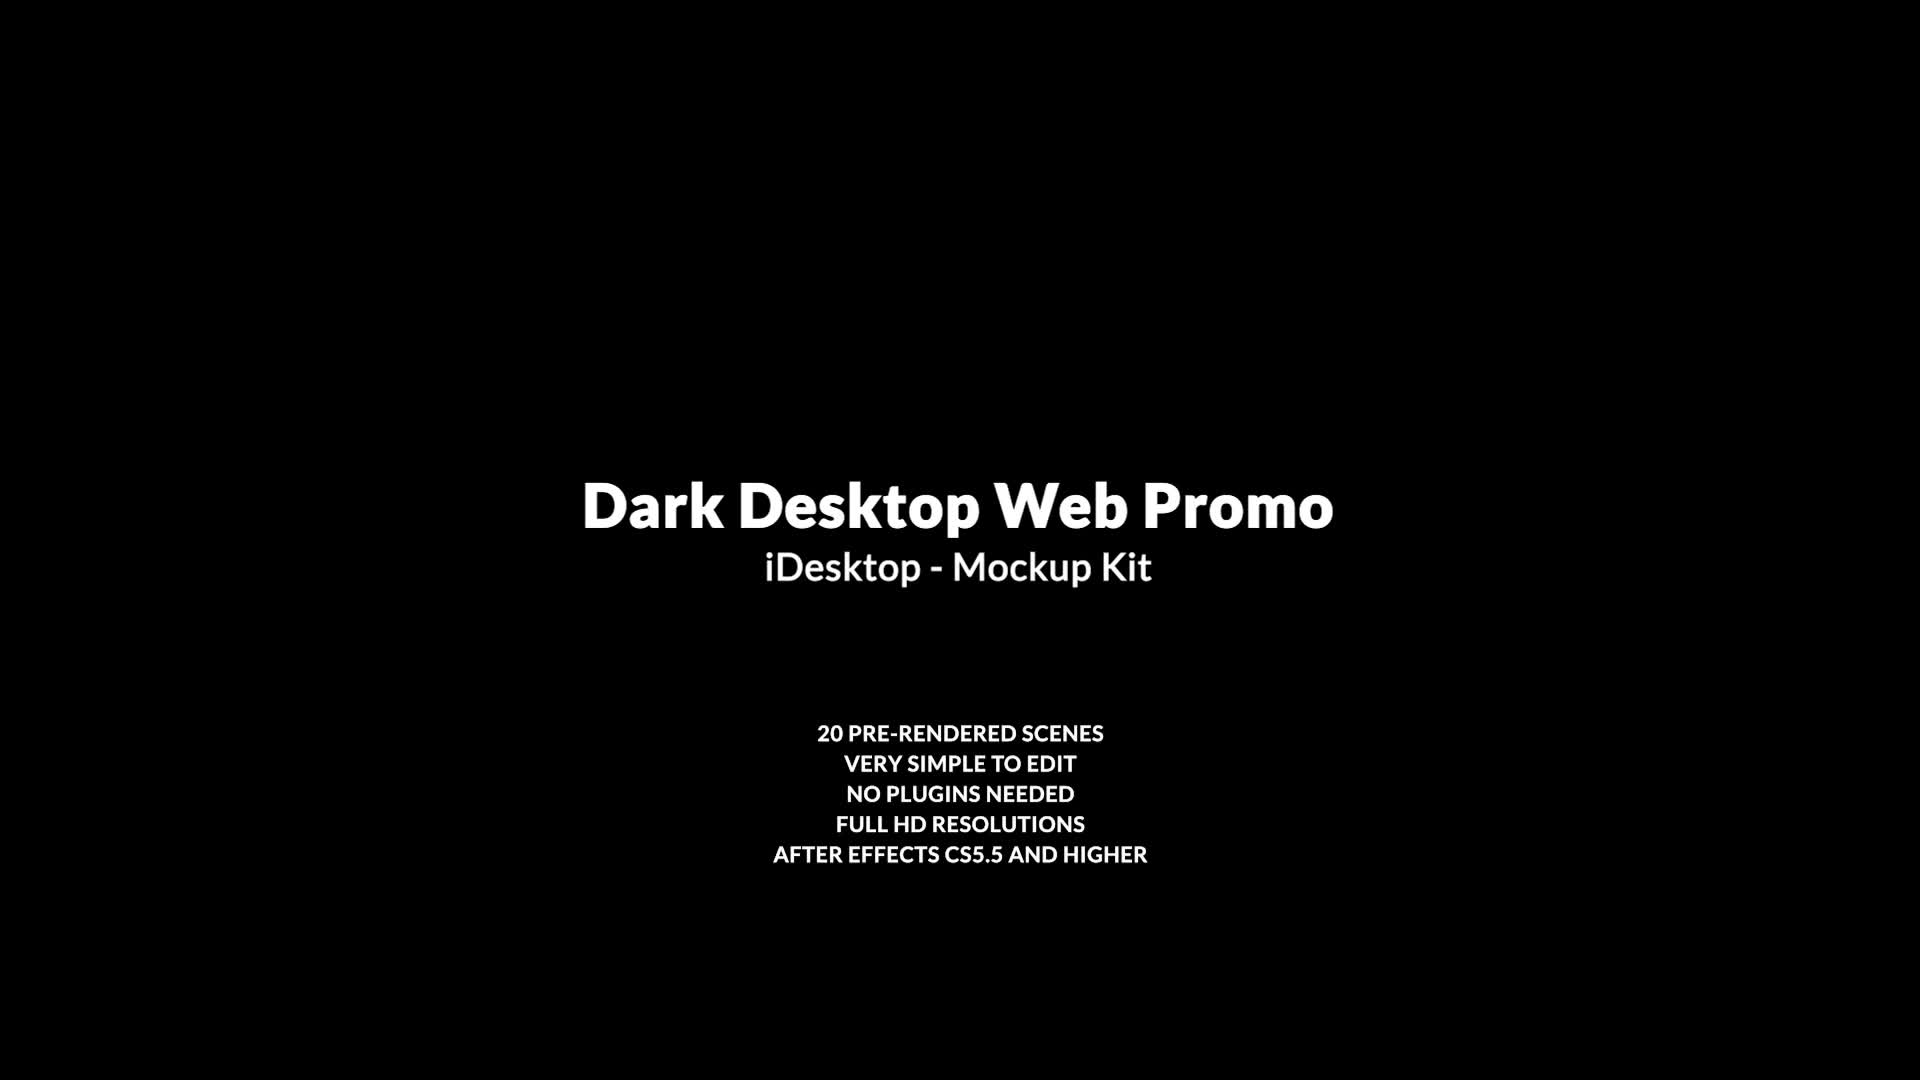 Dark Desktop Promo | Mockup Pack Videohive 37847601 After Effects Image 1